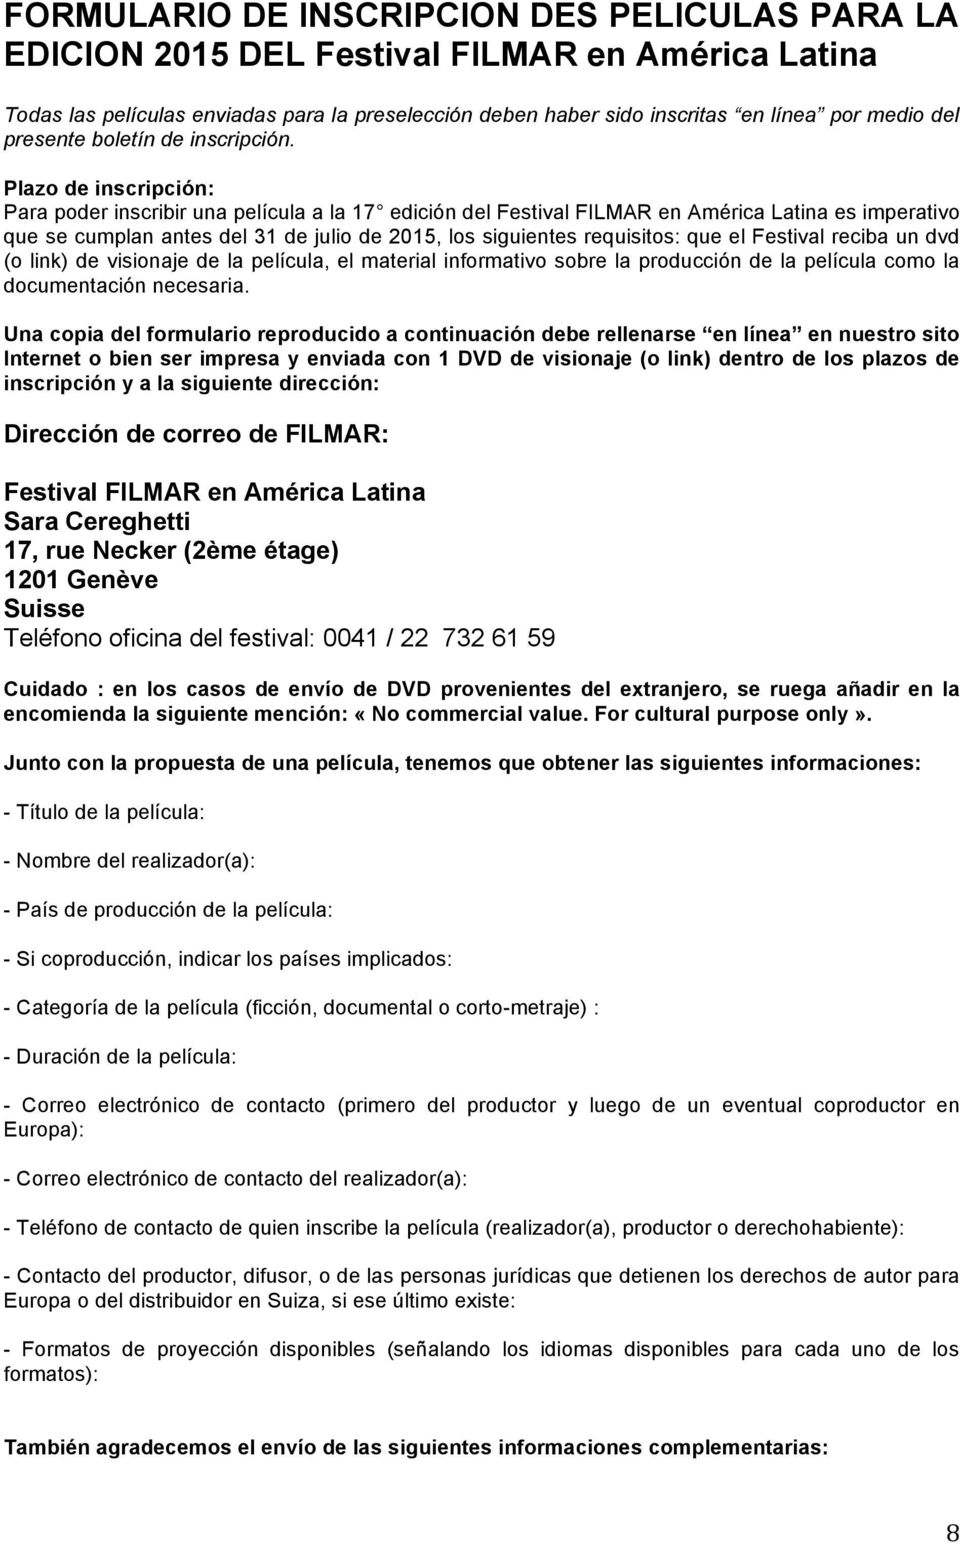 Plazo de inscripción: Para poder inscribir una película a la 17 edición del Festival FILMAR en América Latina es imperativo que se cumplan antes del 31 de julio de 2015, los siguientes requisitos: